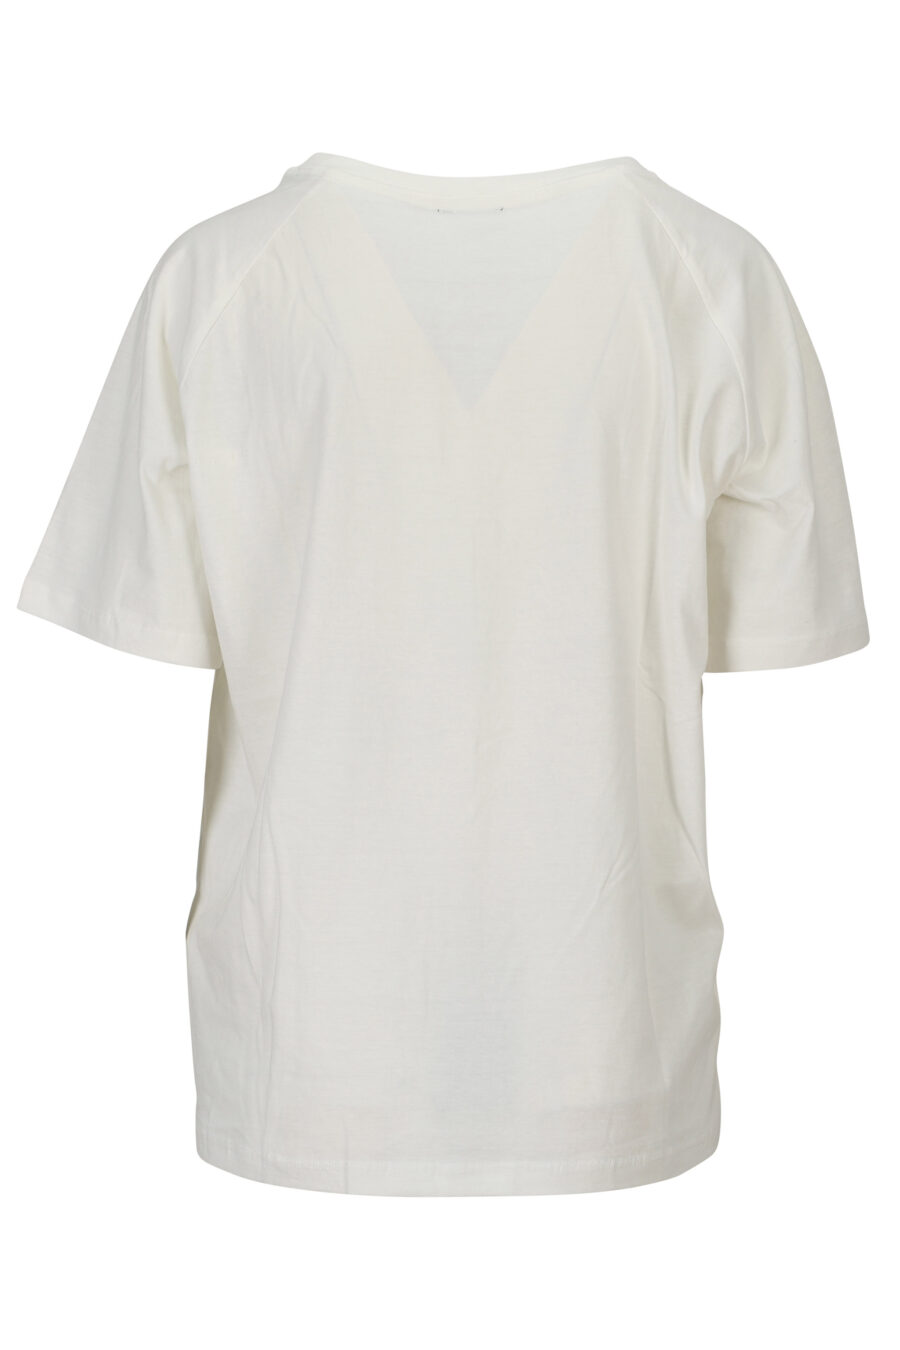 Camiseta blanca con maxilogo "strass" - 8058610837020 1